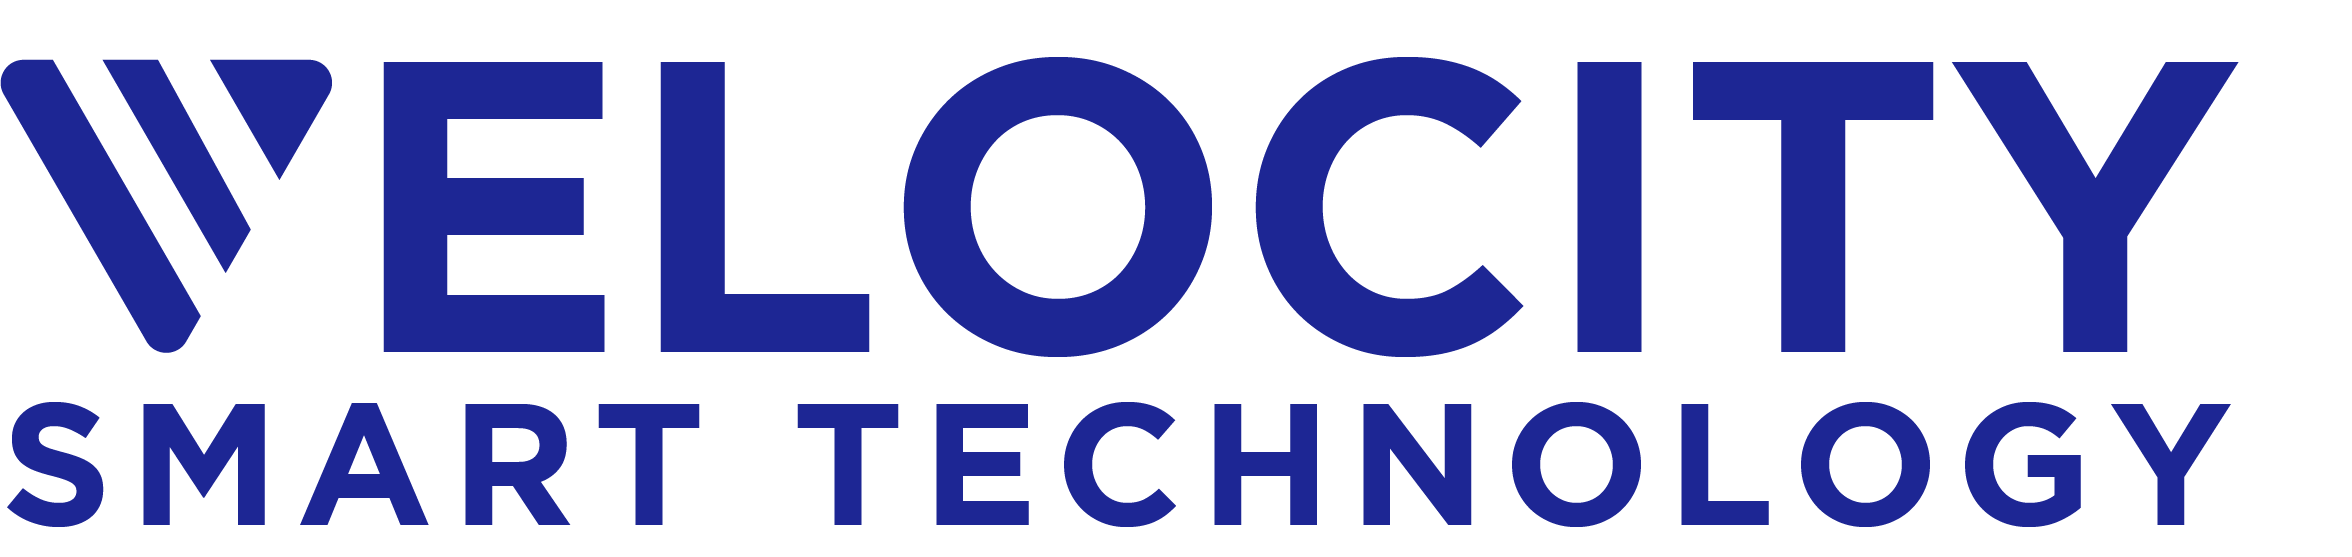 BLUE- symbol as V logo